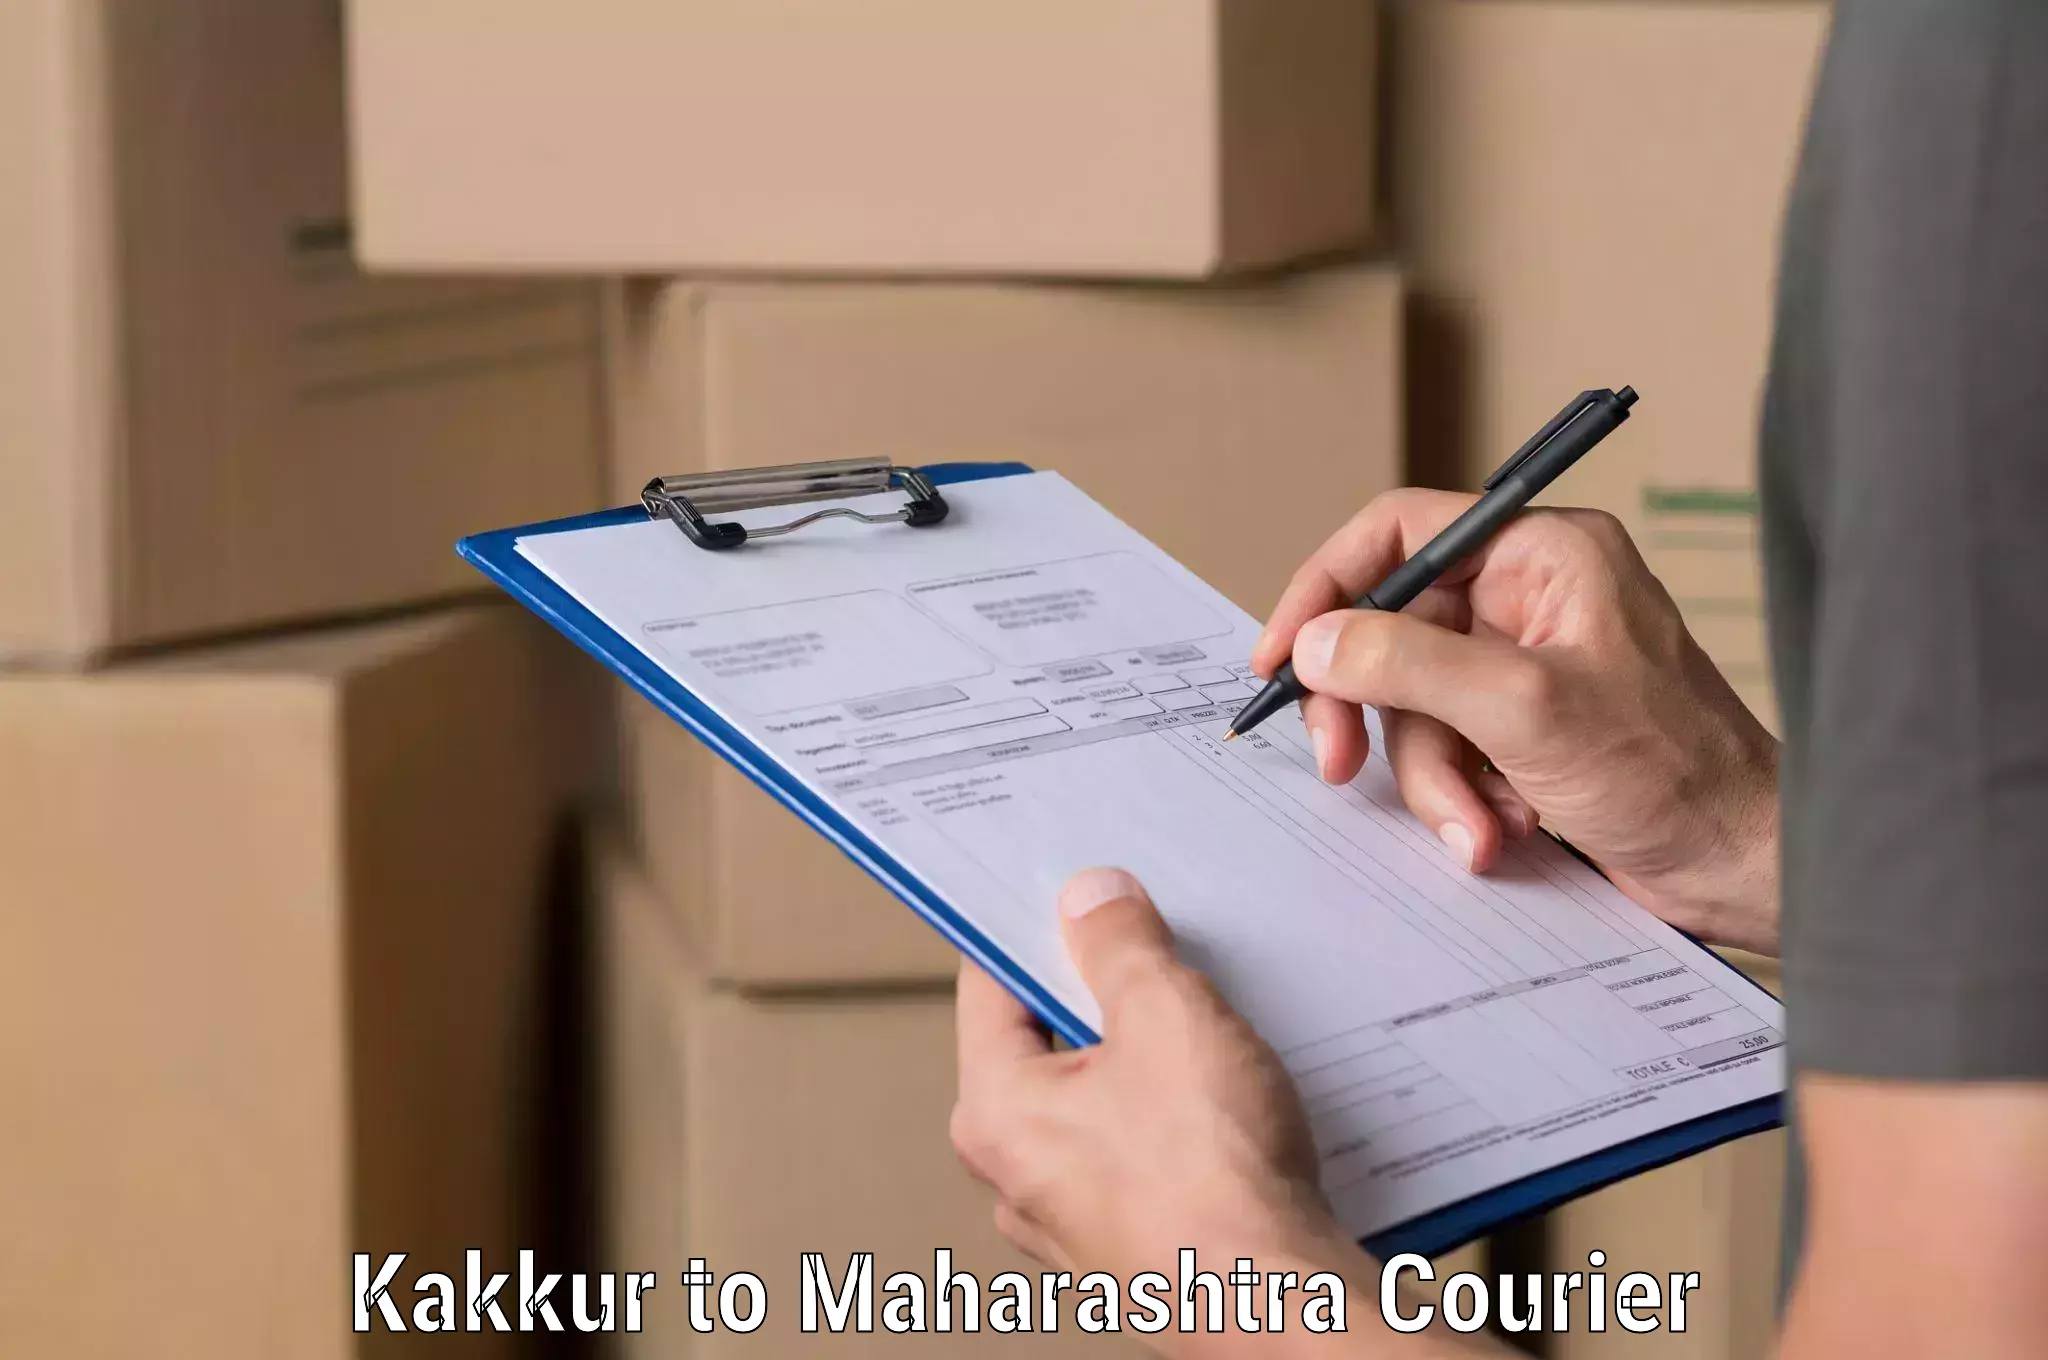 Global freight services Kakkur to Navi Mumbai